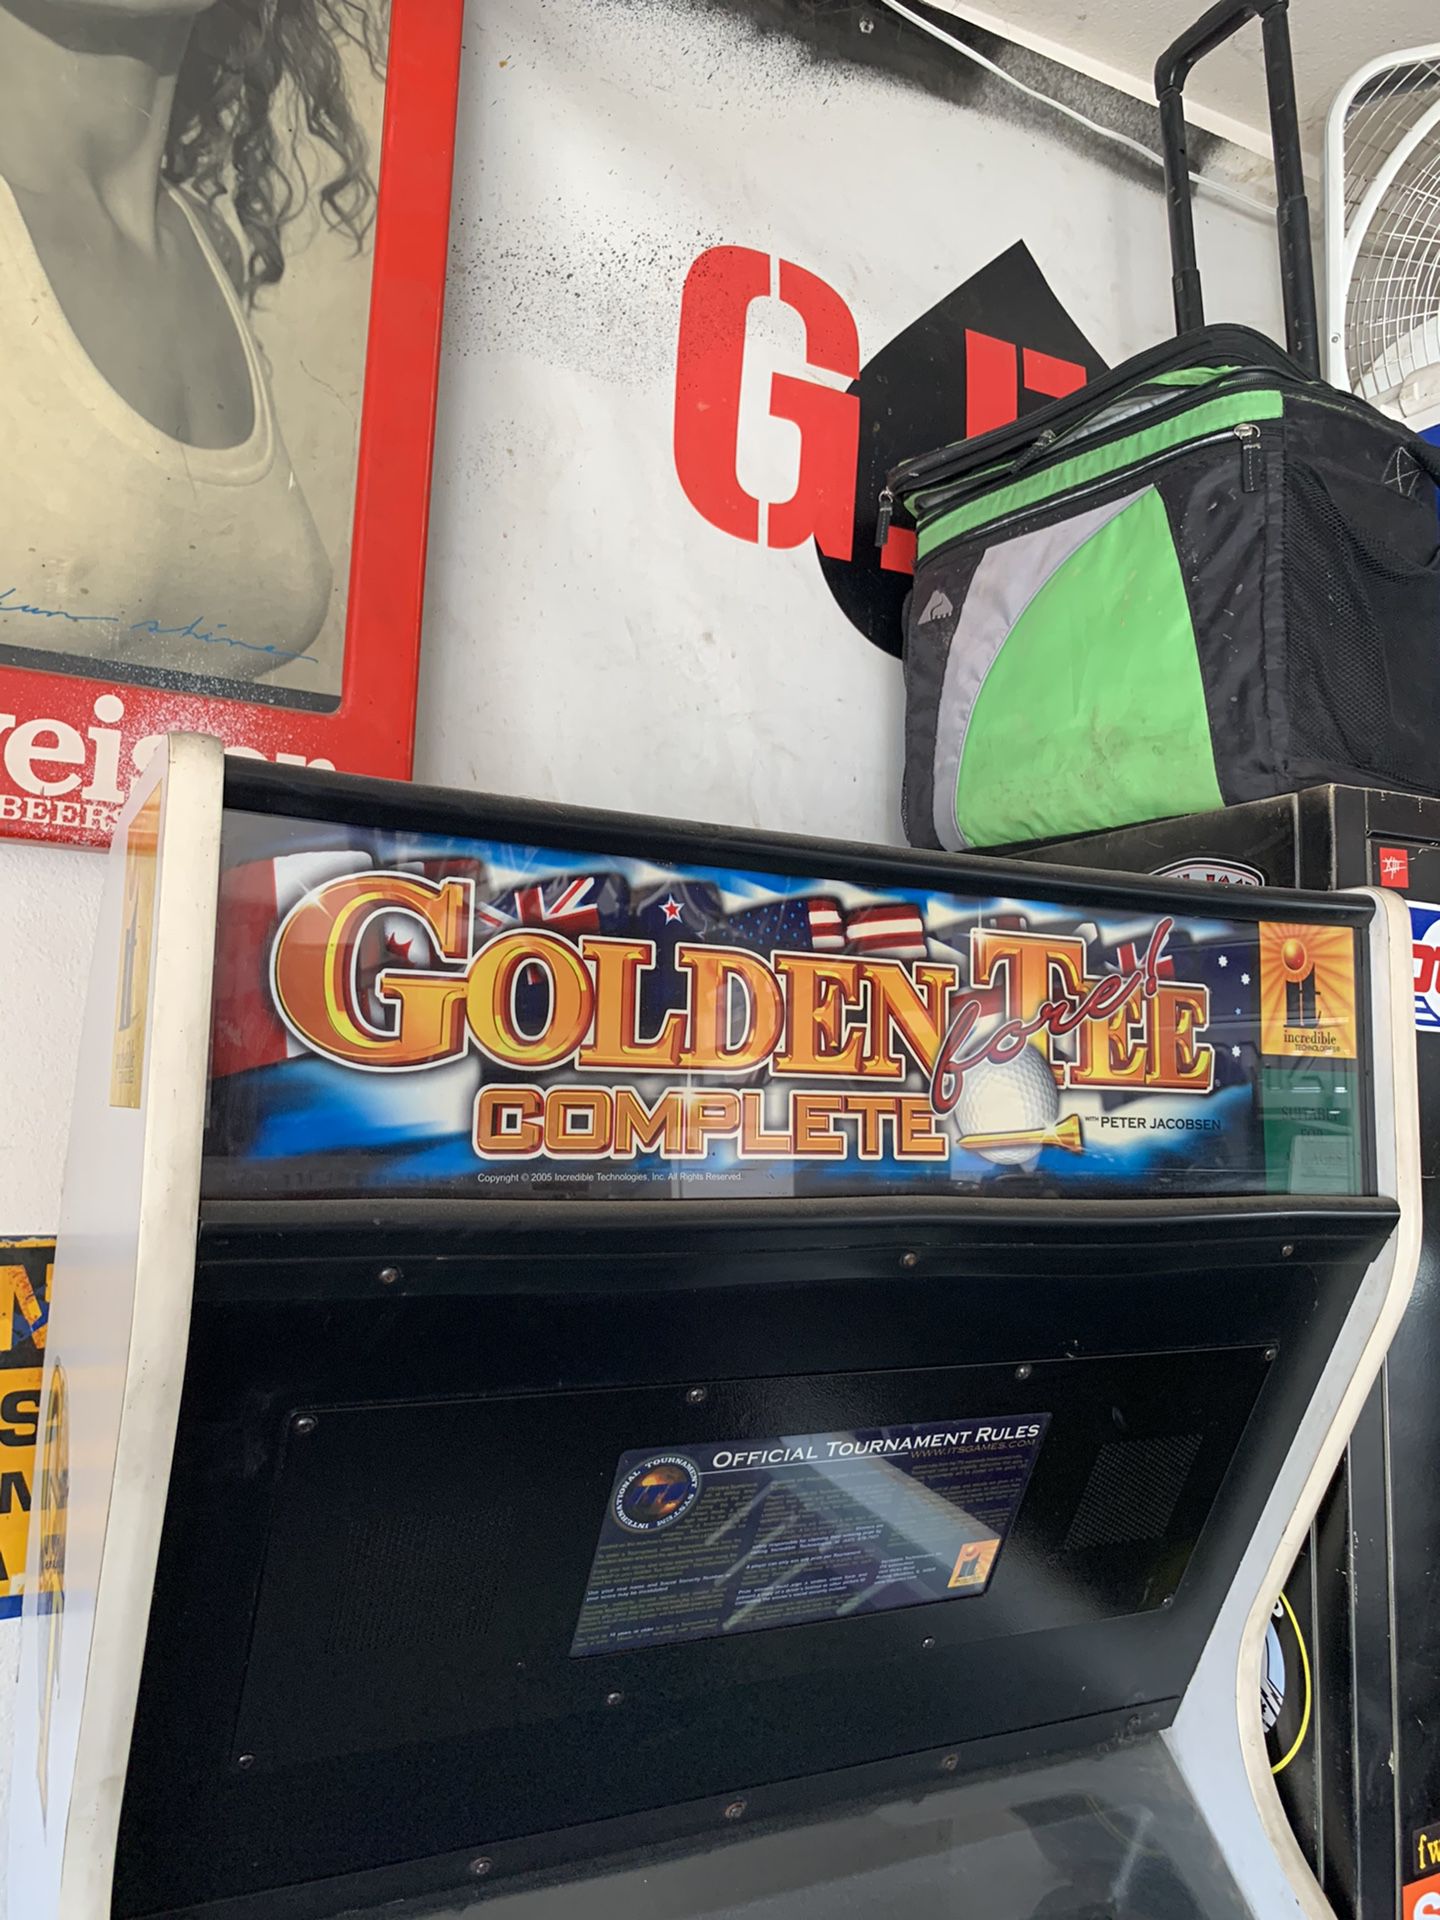 Golden tee complete arcade